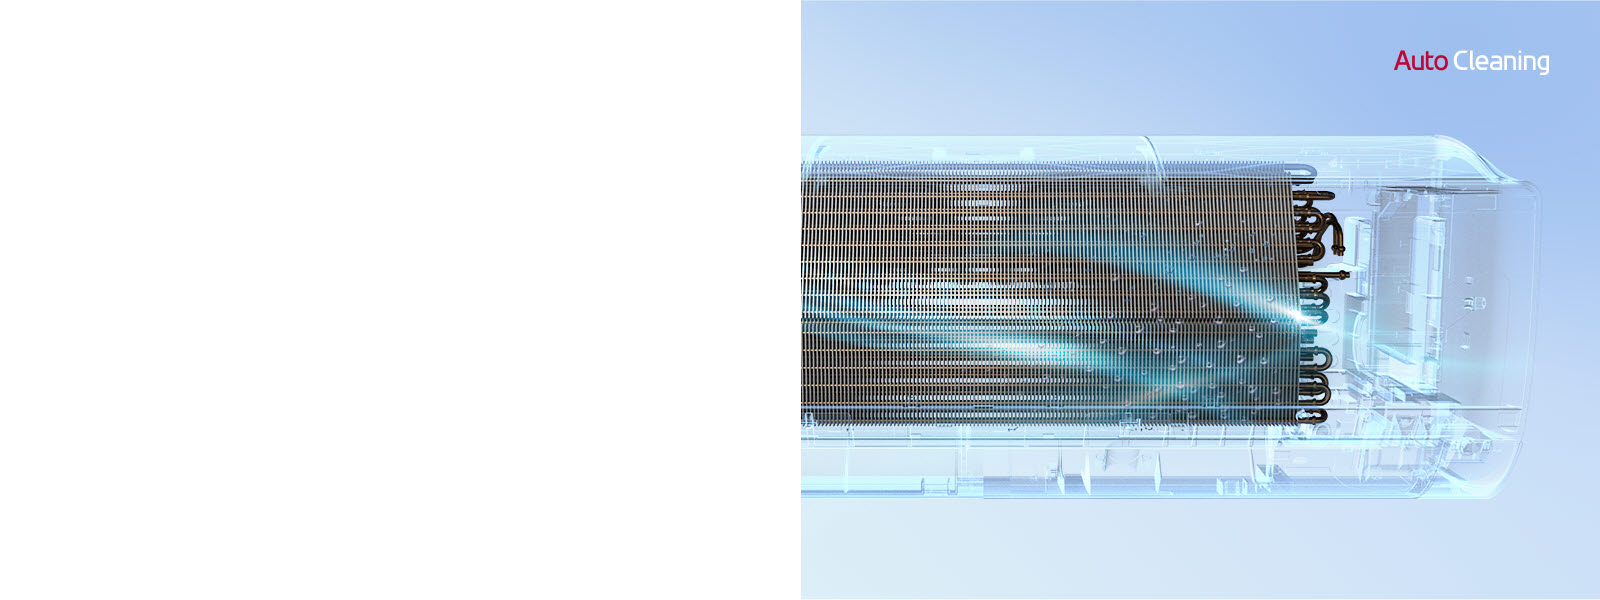 Вид спереди на кондиционер LG с полностью невидимым внешним видом, поэтому можно увидеть внутреннюю работу машины. Устройство работает, а затем синий свет, механизм автоматической очистки, включается и омывает машину синим светом. Логотип AutoCleaning находится в правом верхнем углу.